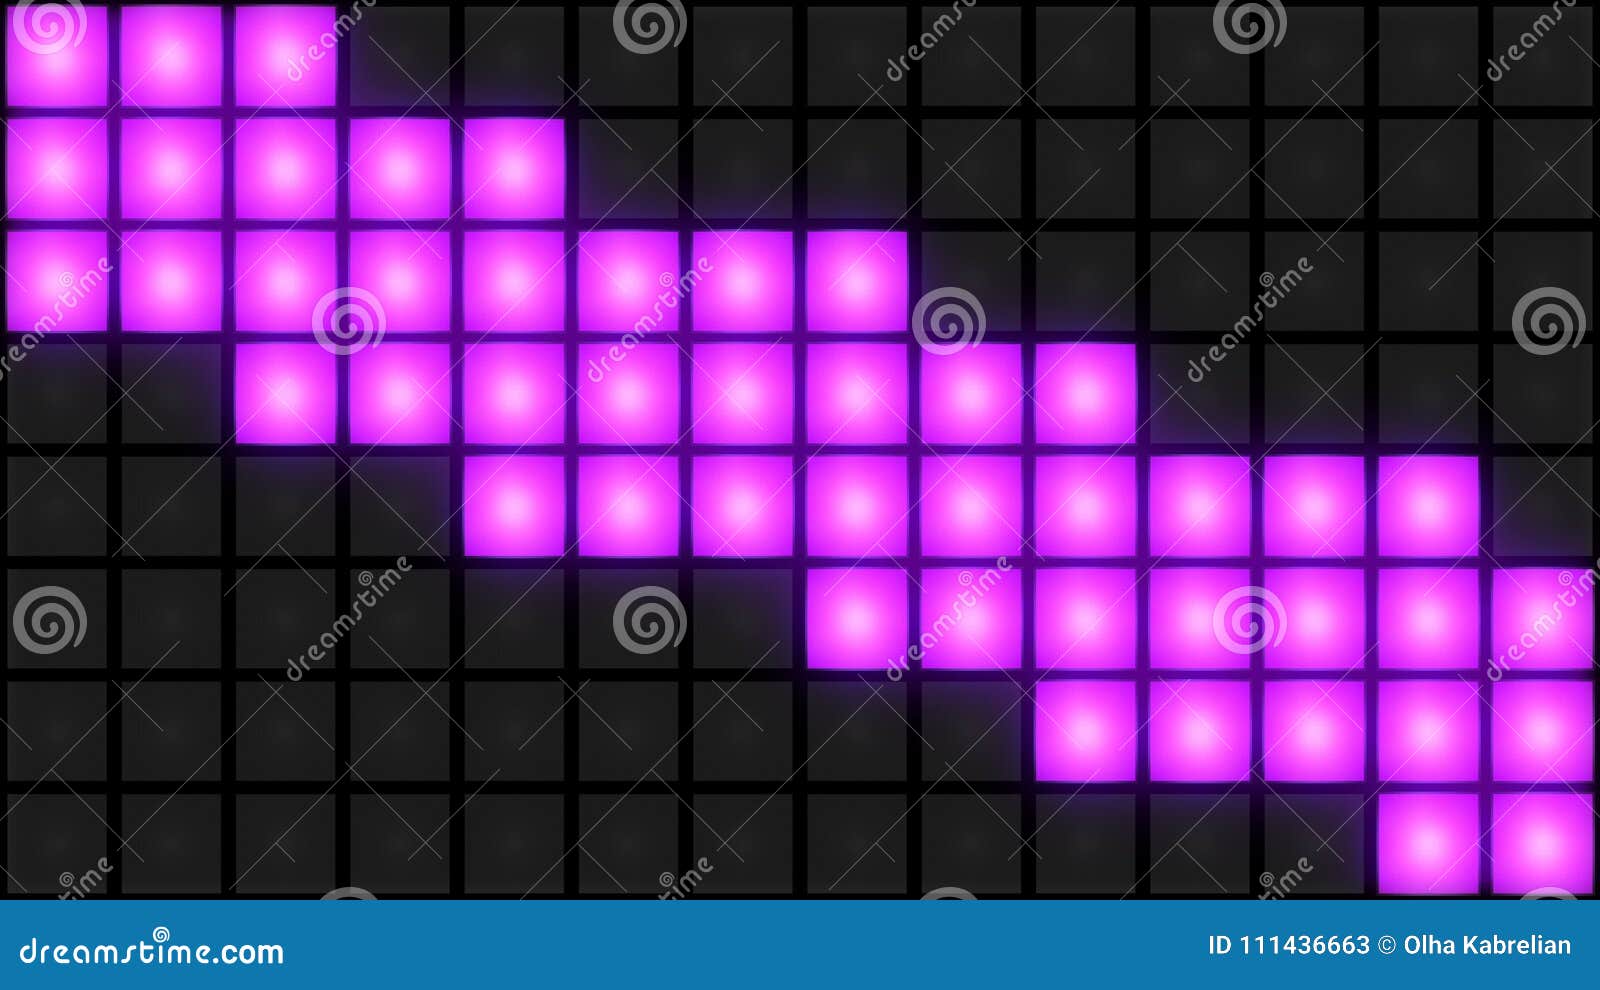 Pink Disco Nightclub Dance Floor Wall Glowing Light Grid Background Vj Loop  Stock Video - Video of floor, display: 111436663